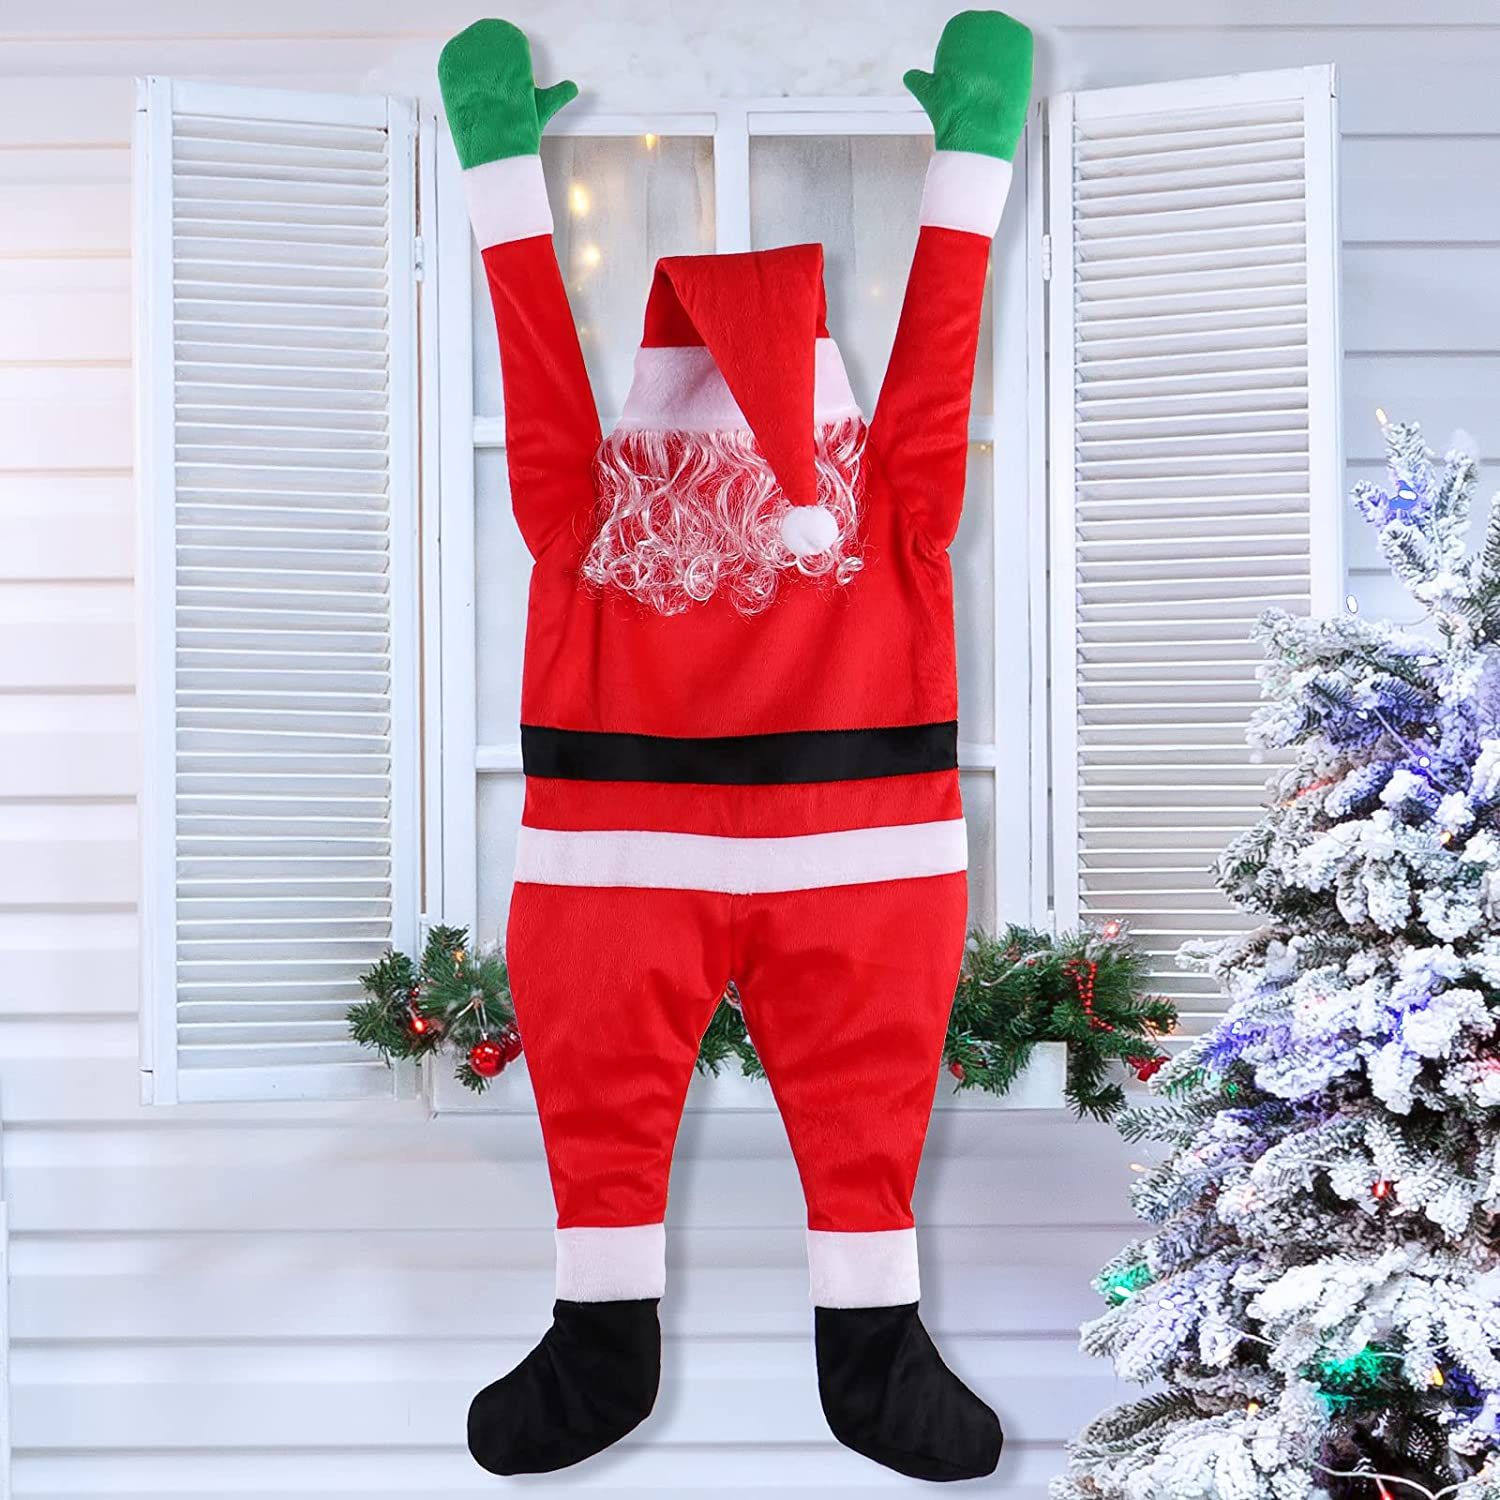 TOLOCO Hanging Santa Claus